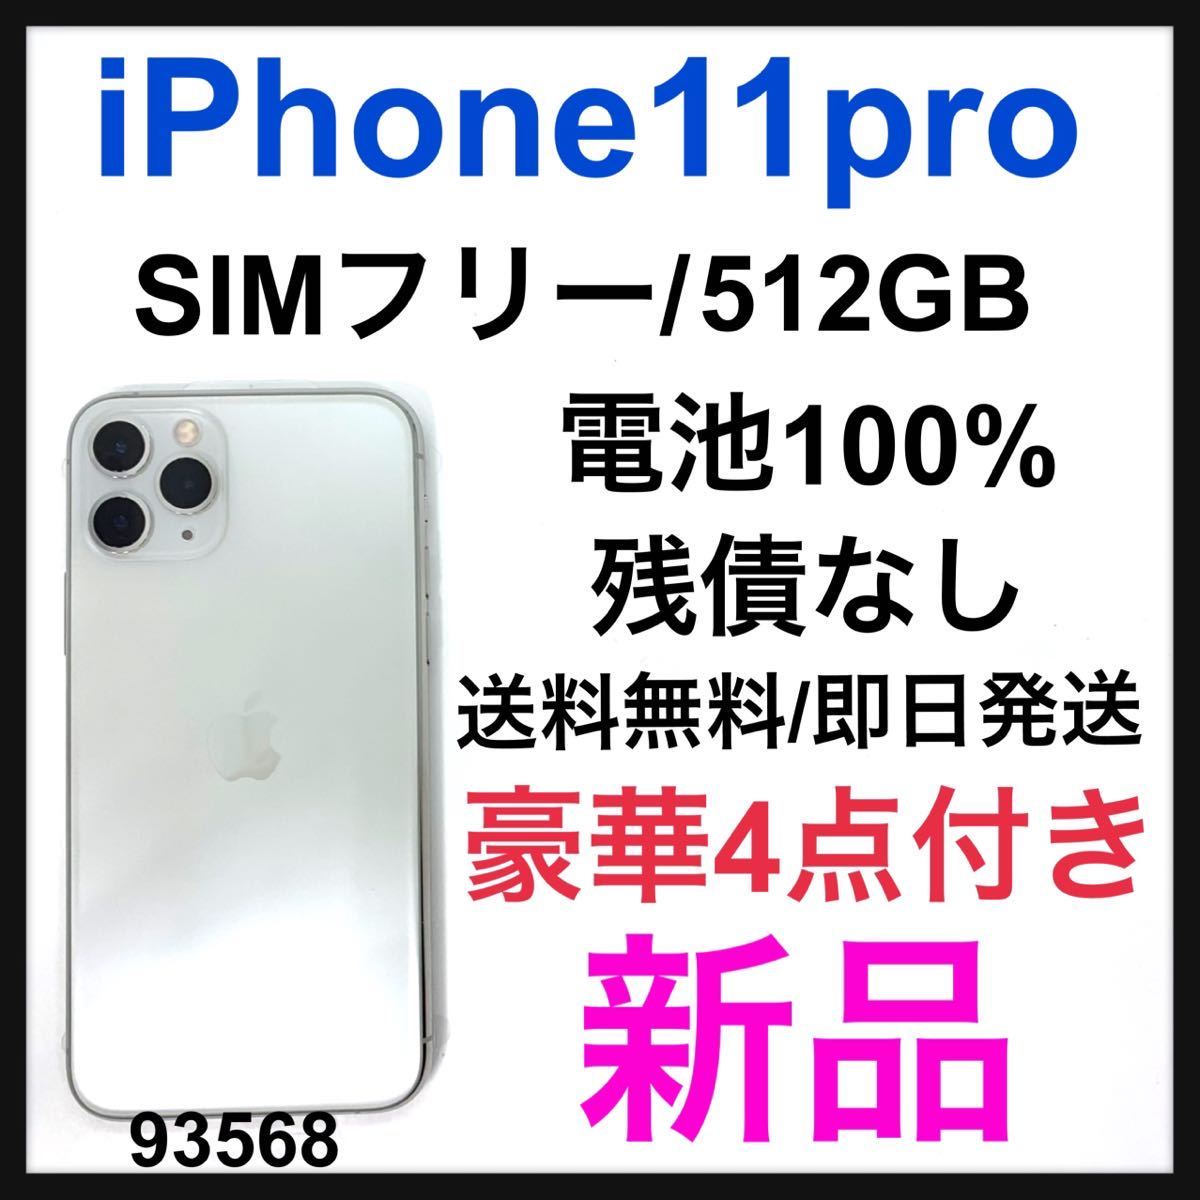 最高の品質の 新品 iPhone 11 Pro シルバー 512 GB SIMフリー 本体